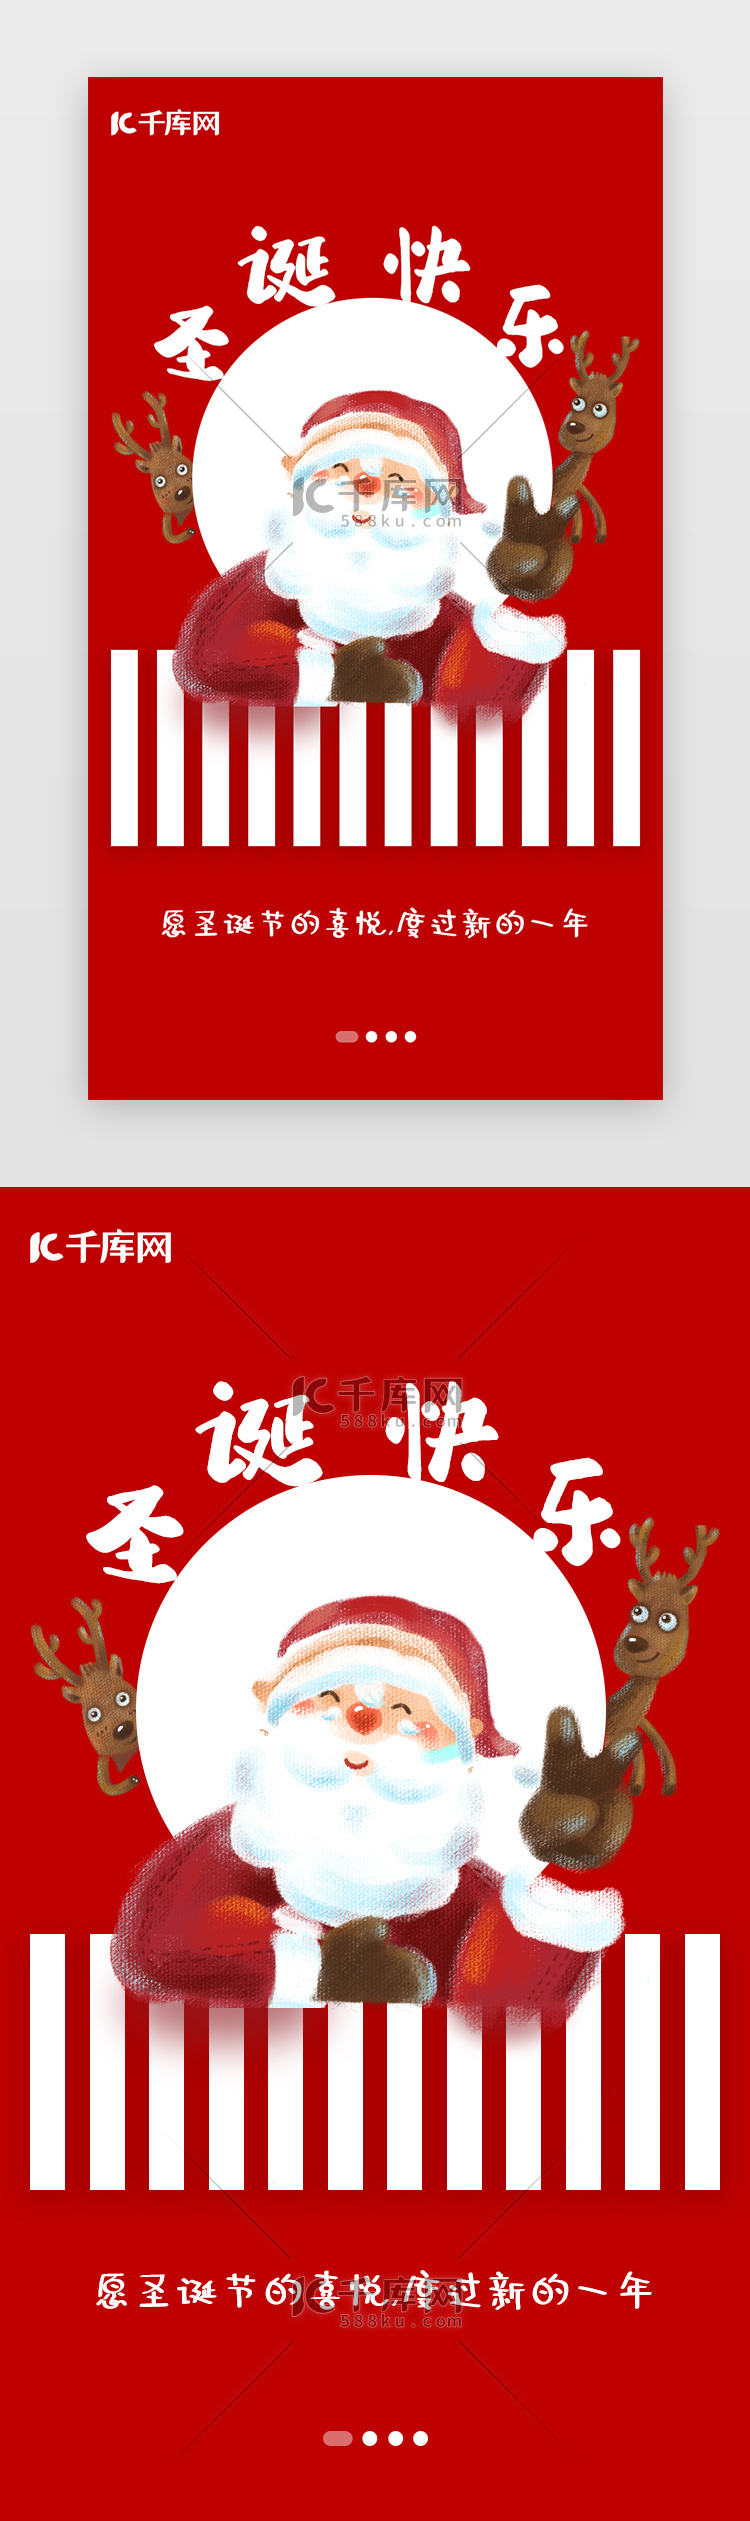 中国红 圣诞节 圣诞老人 闪屏页启动页引导页闪屏